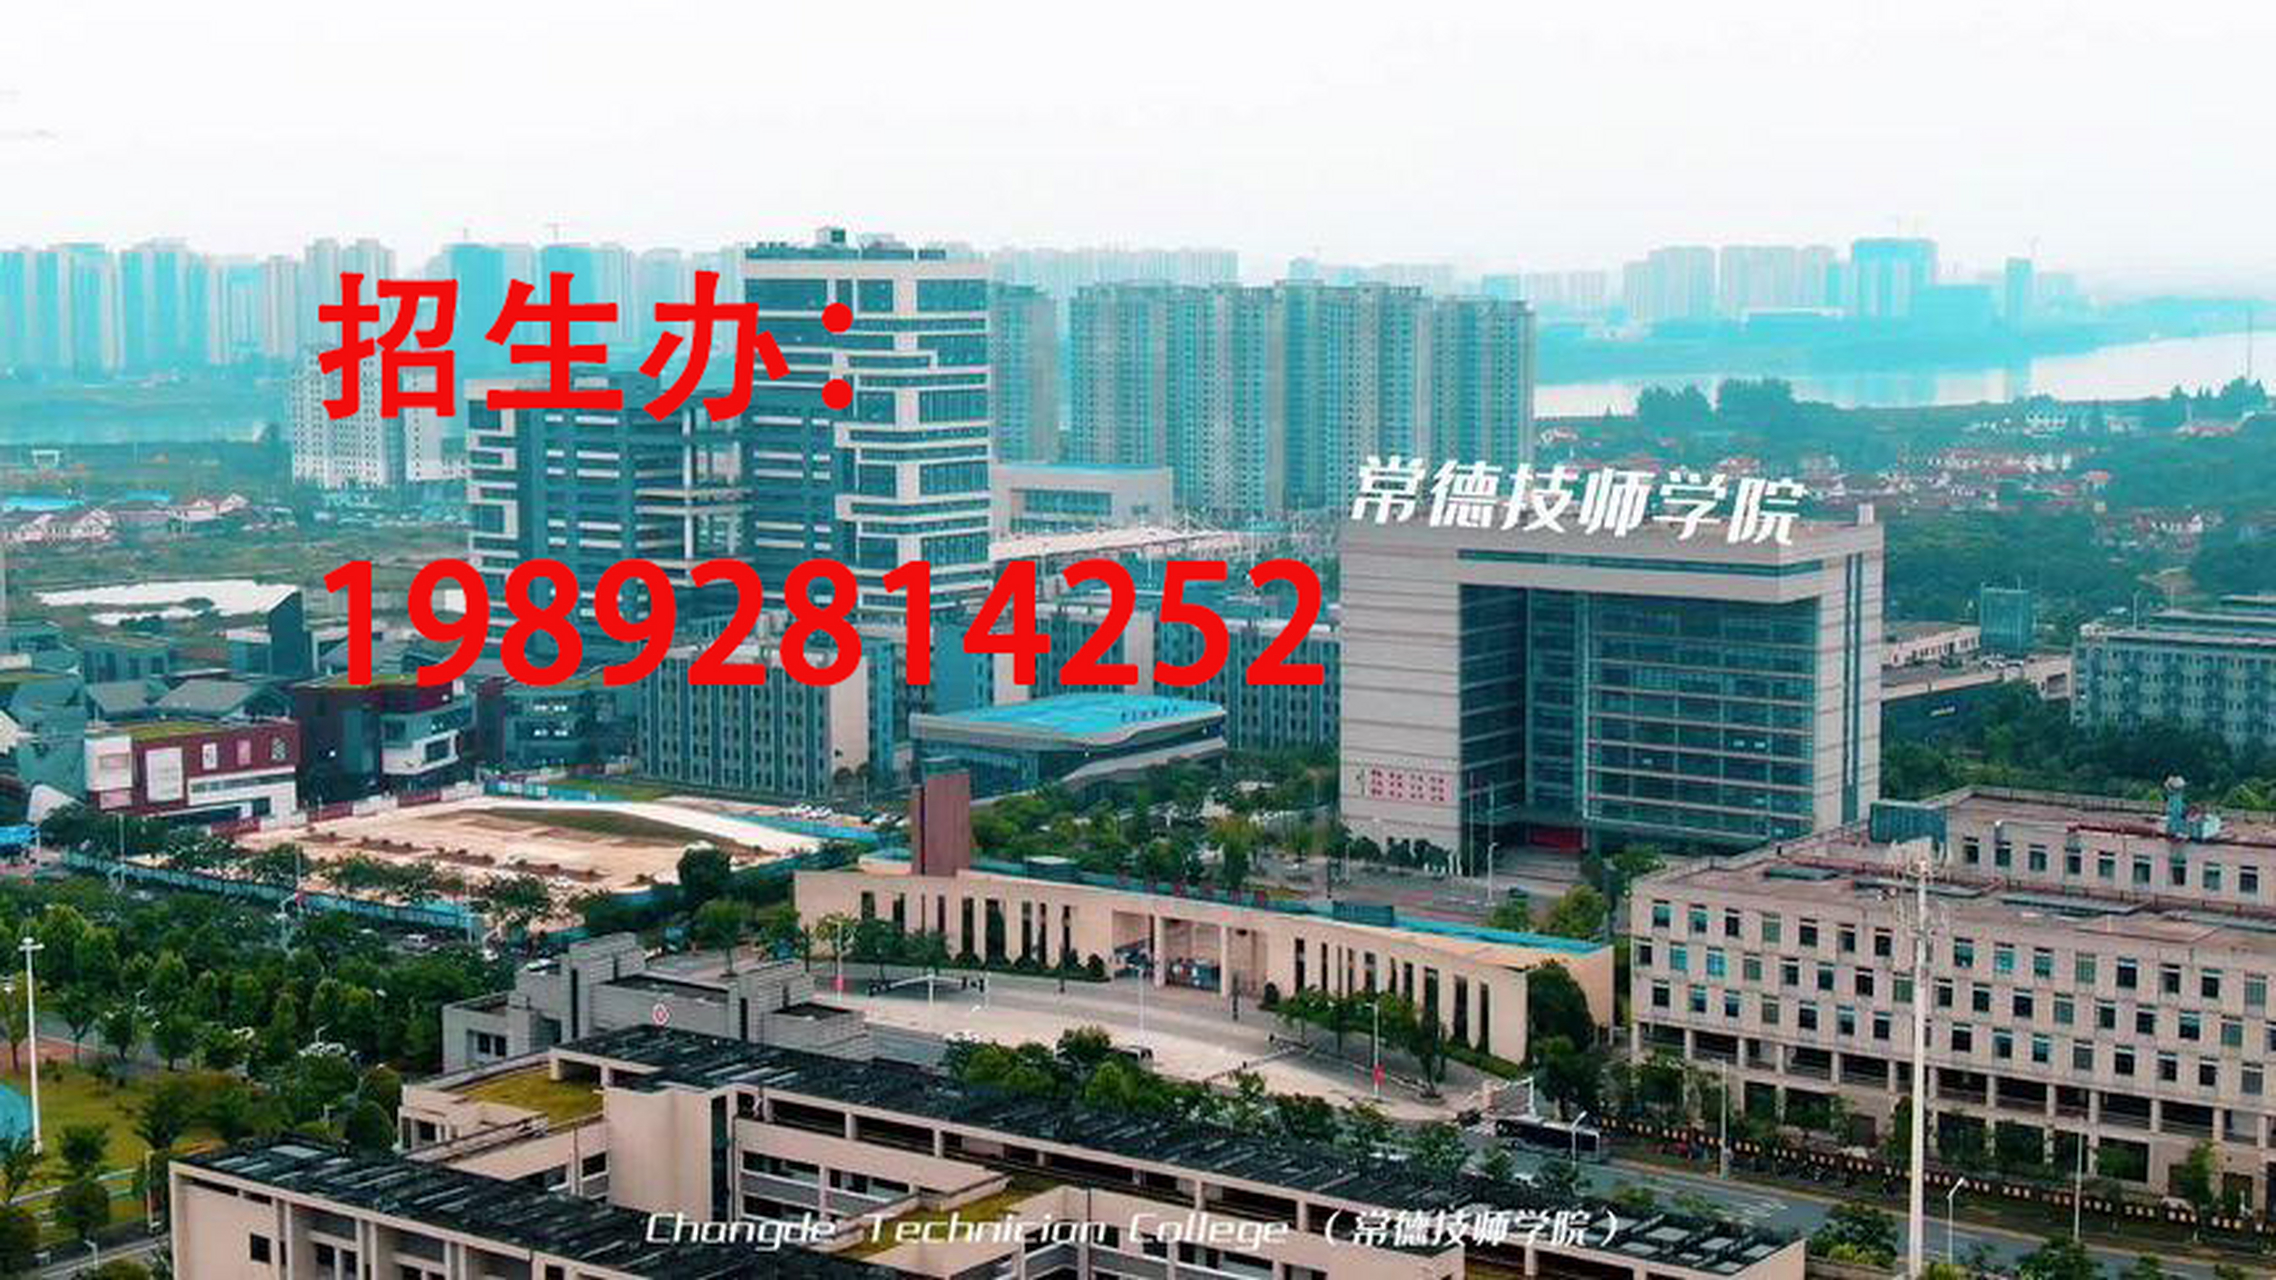 常德技师学院(常德工业学校)是湖南省人民政府批准,常德市人民崭